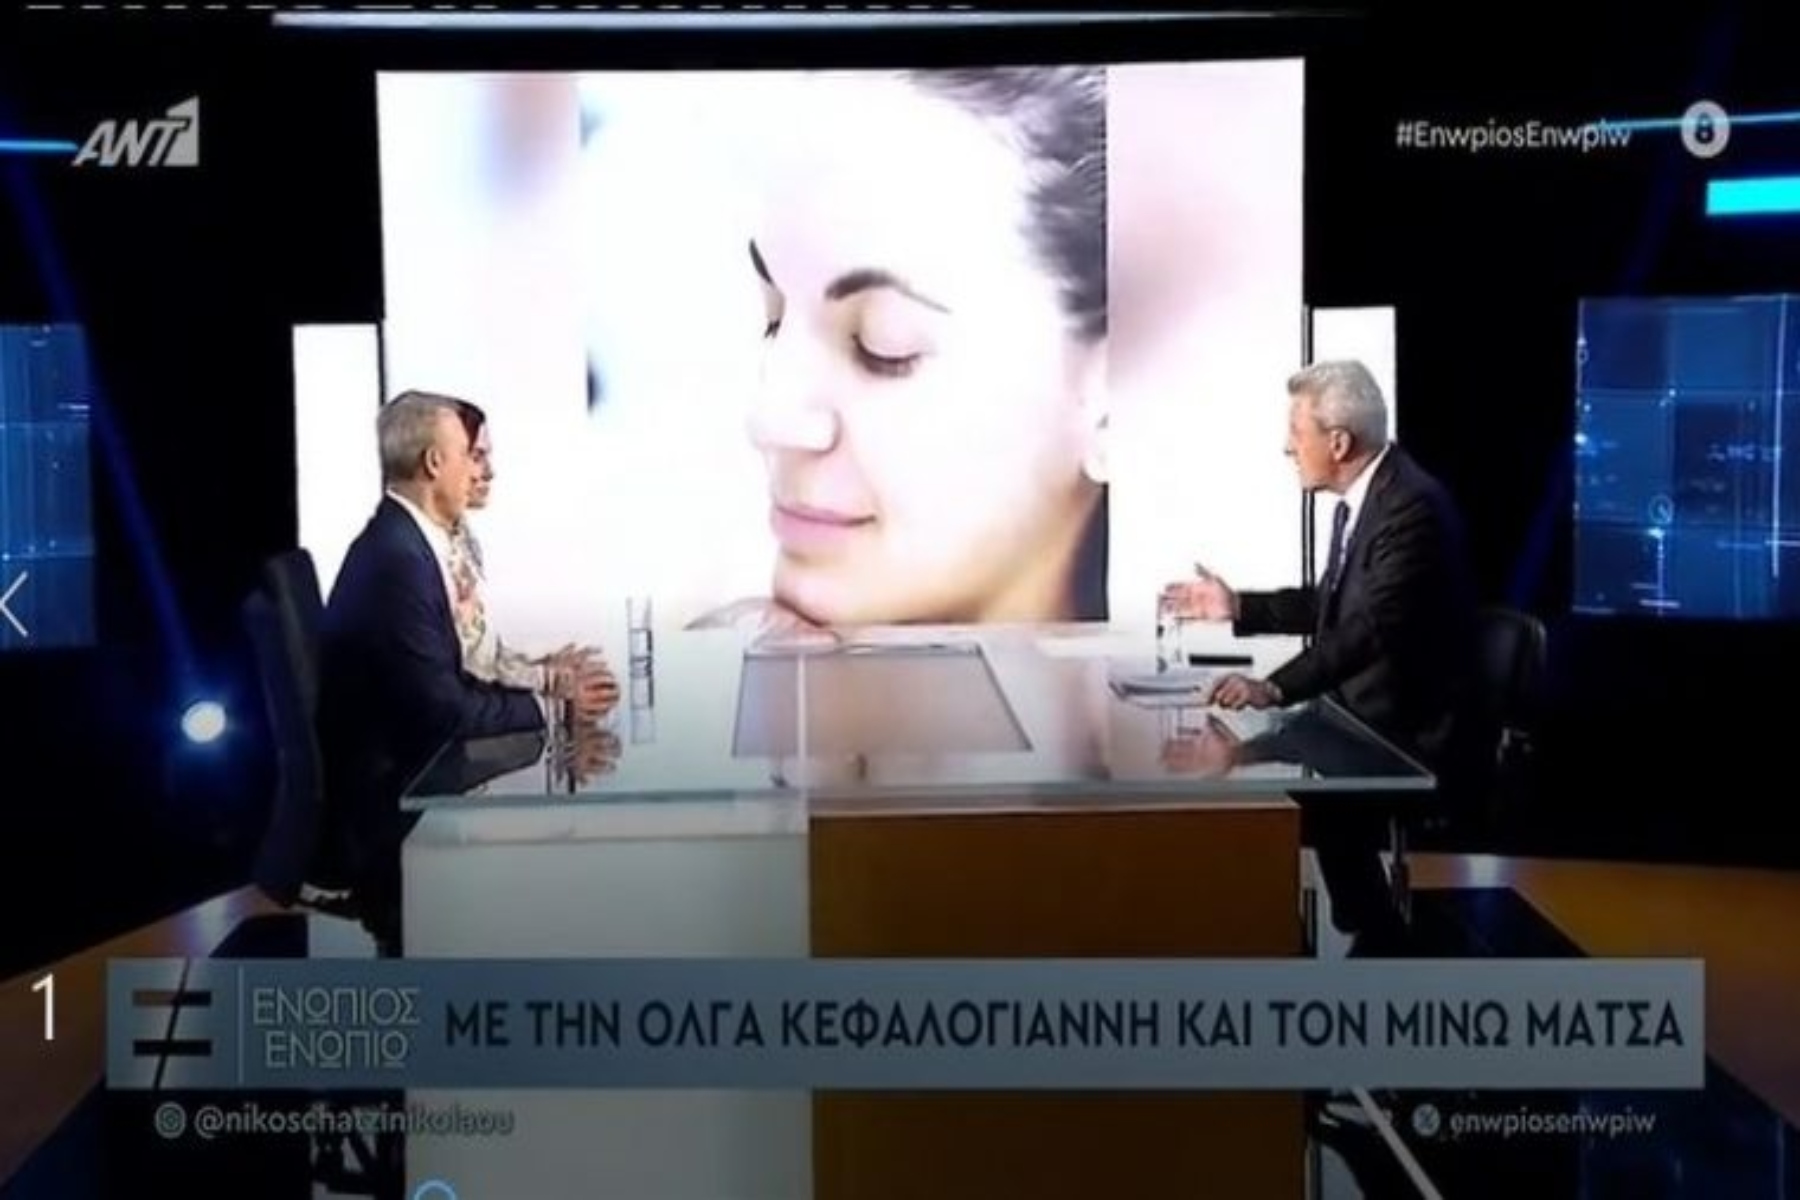 Όλγα Κεφαλογιάννη: Η υπουργός τουρισμού μίλησε στο Ενώπιος ενωπίω για τις δυσκολίες που πέρασε κατά την εξωσωματική γονιμοποίηση